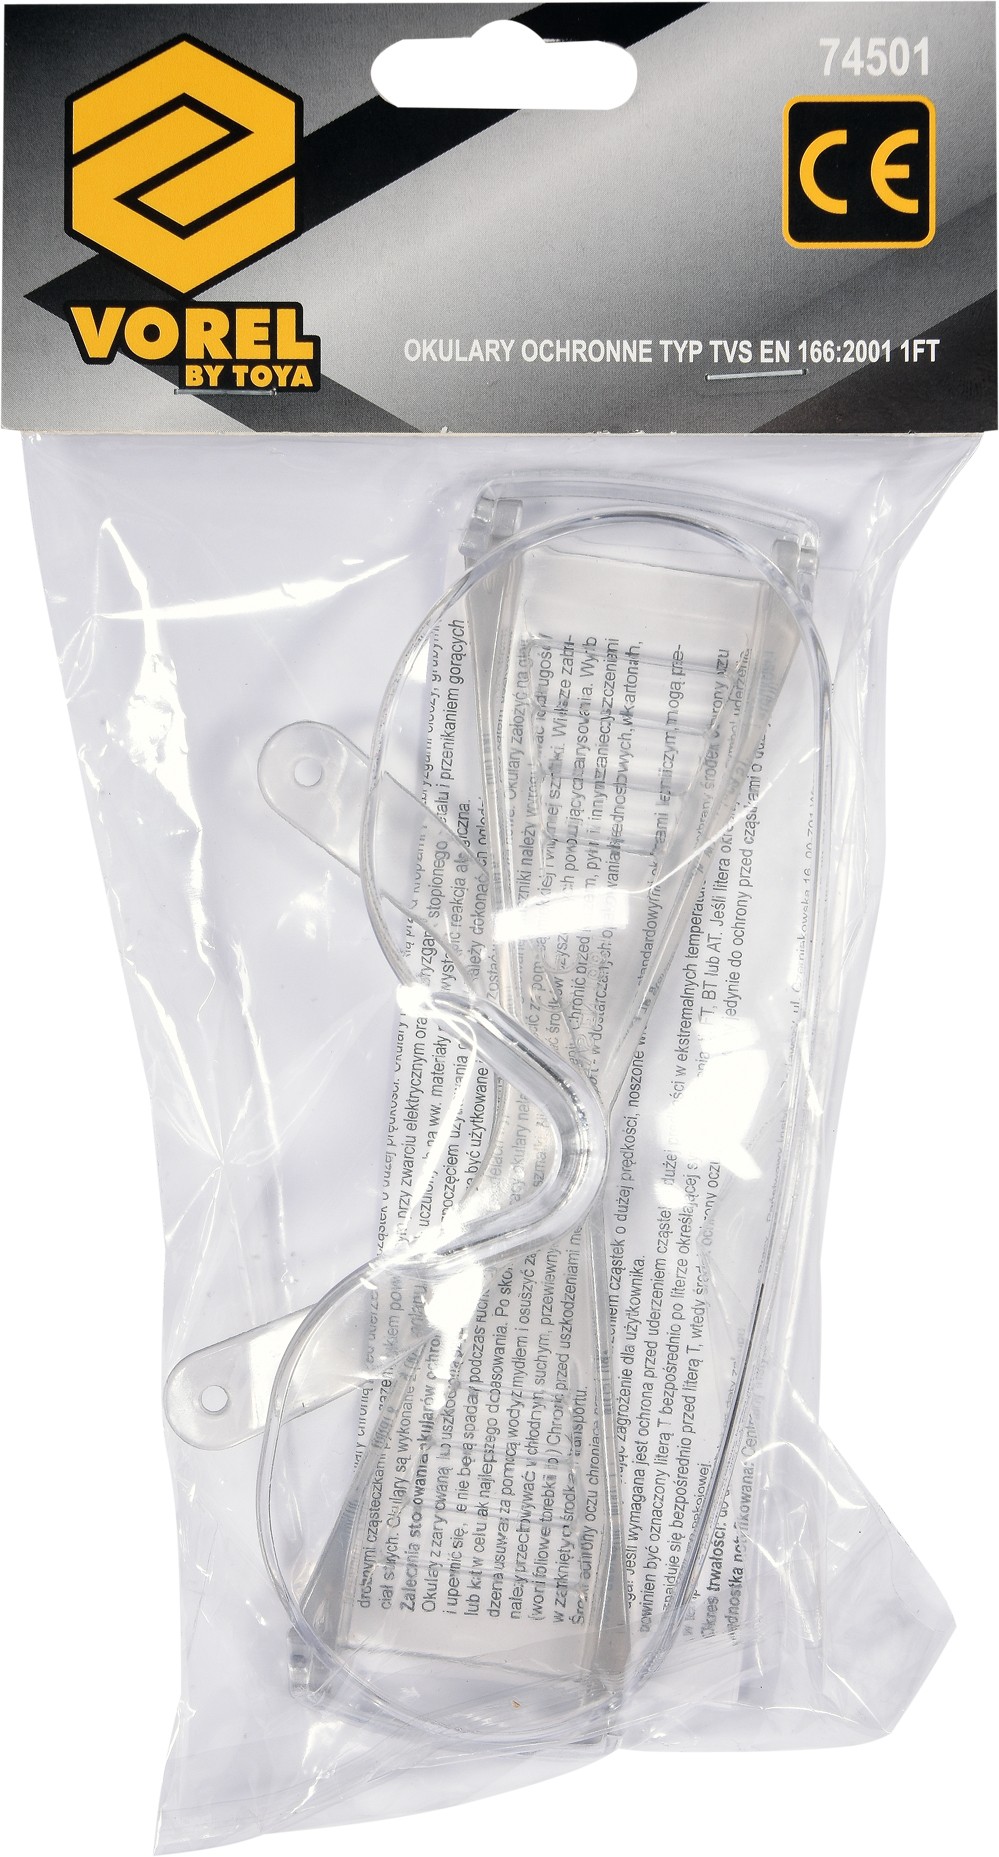 Brýle ochranné plastové HF-111